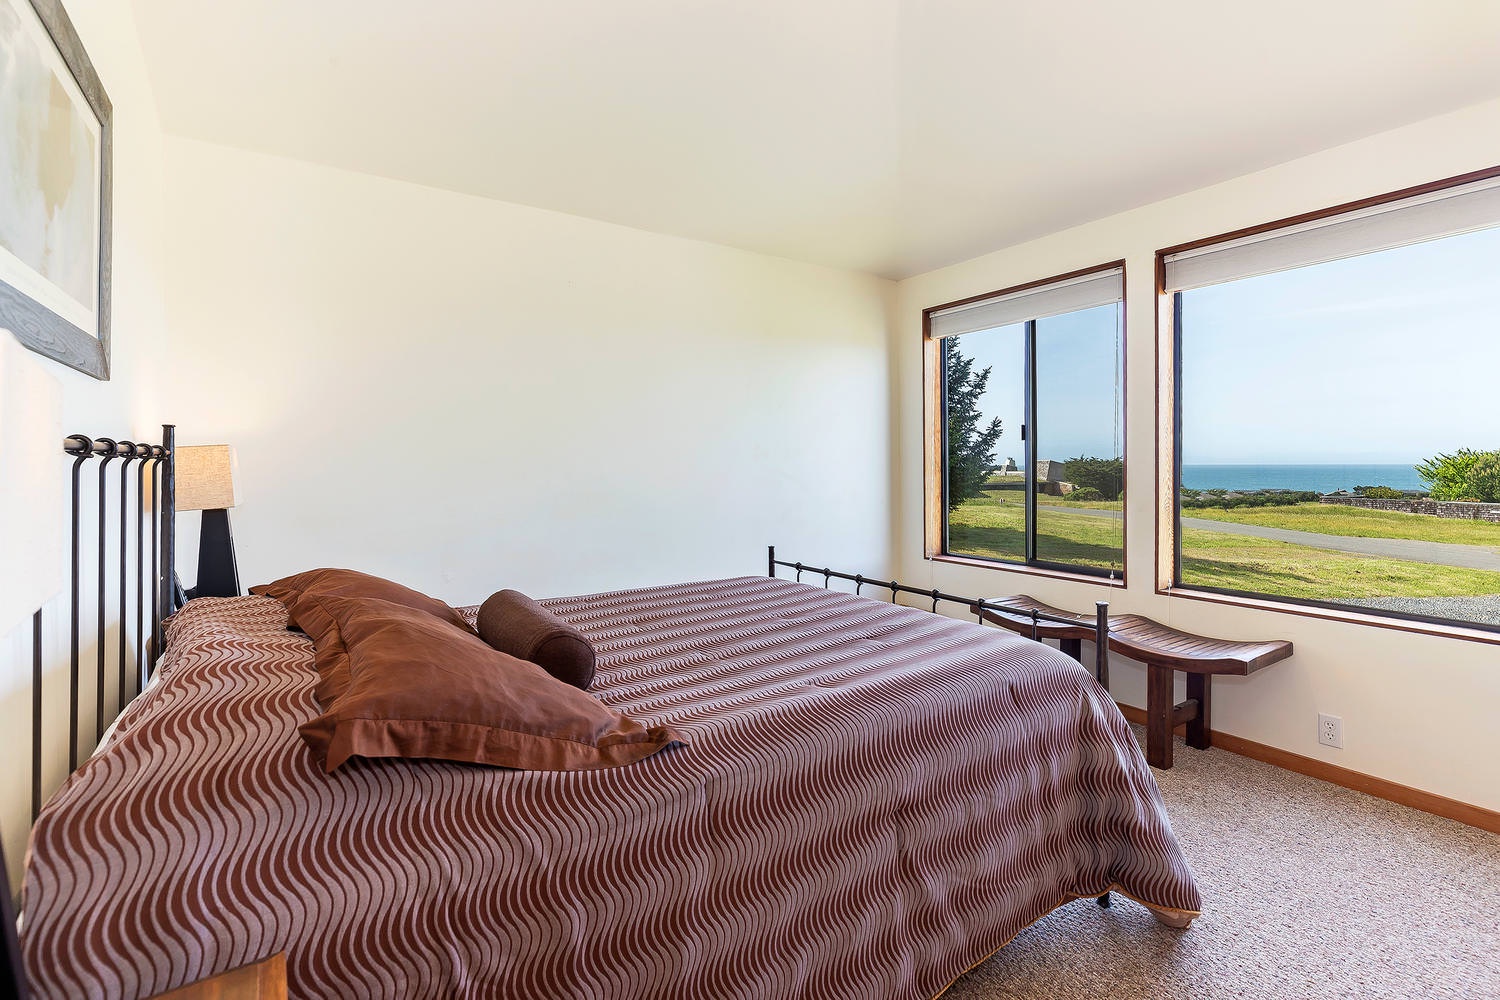 2nd bedroom: Queen bed with ocean views